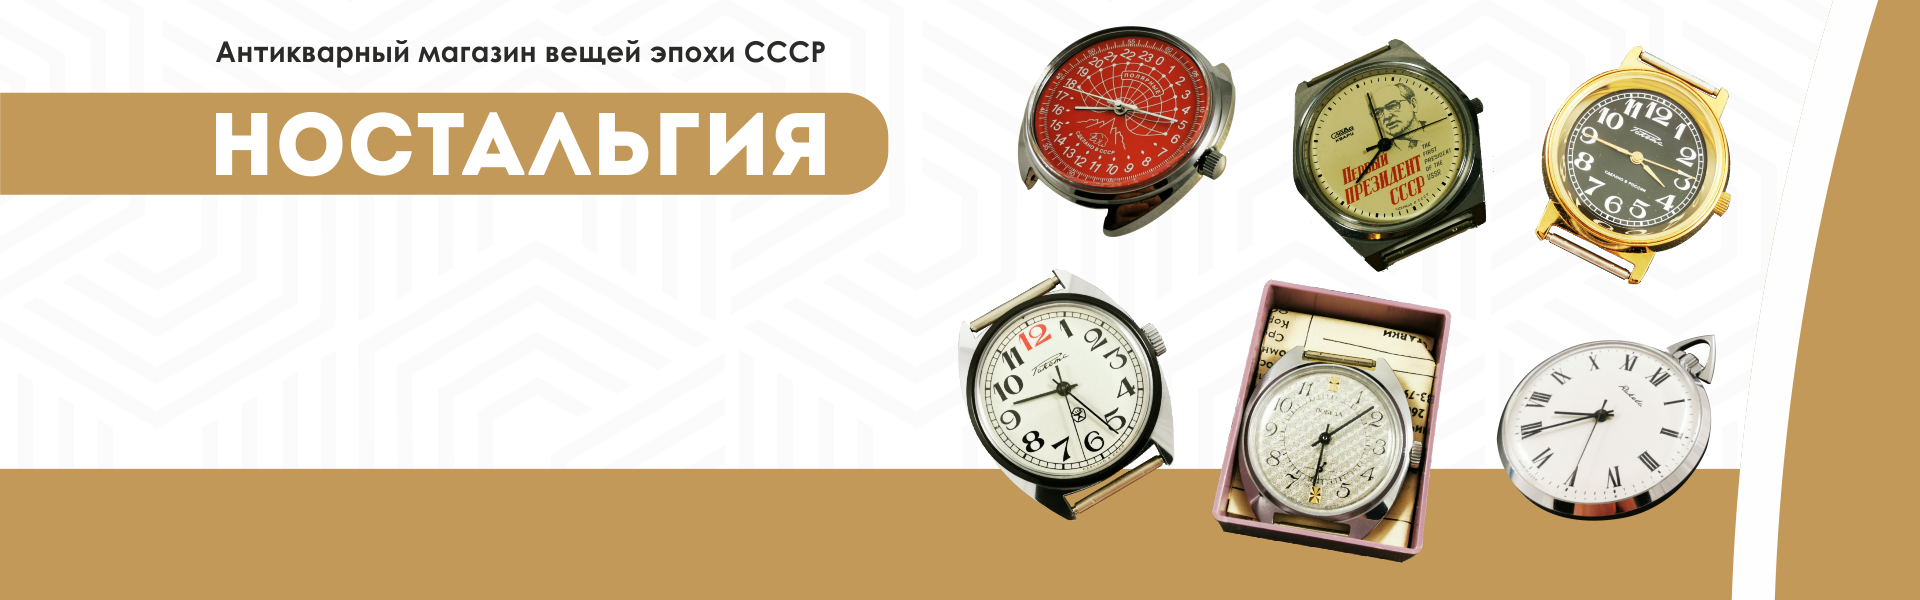 Часы СССР NOS